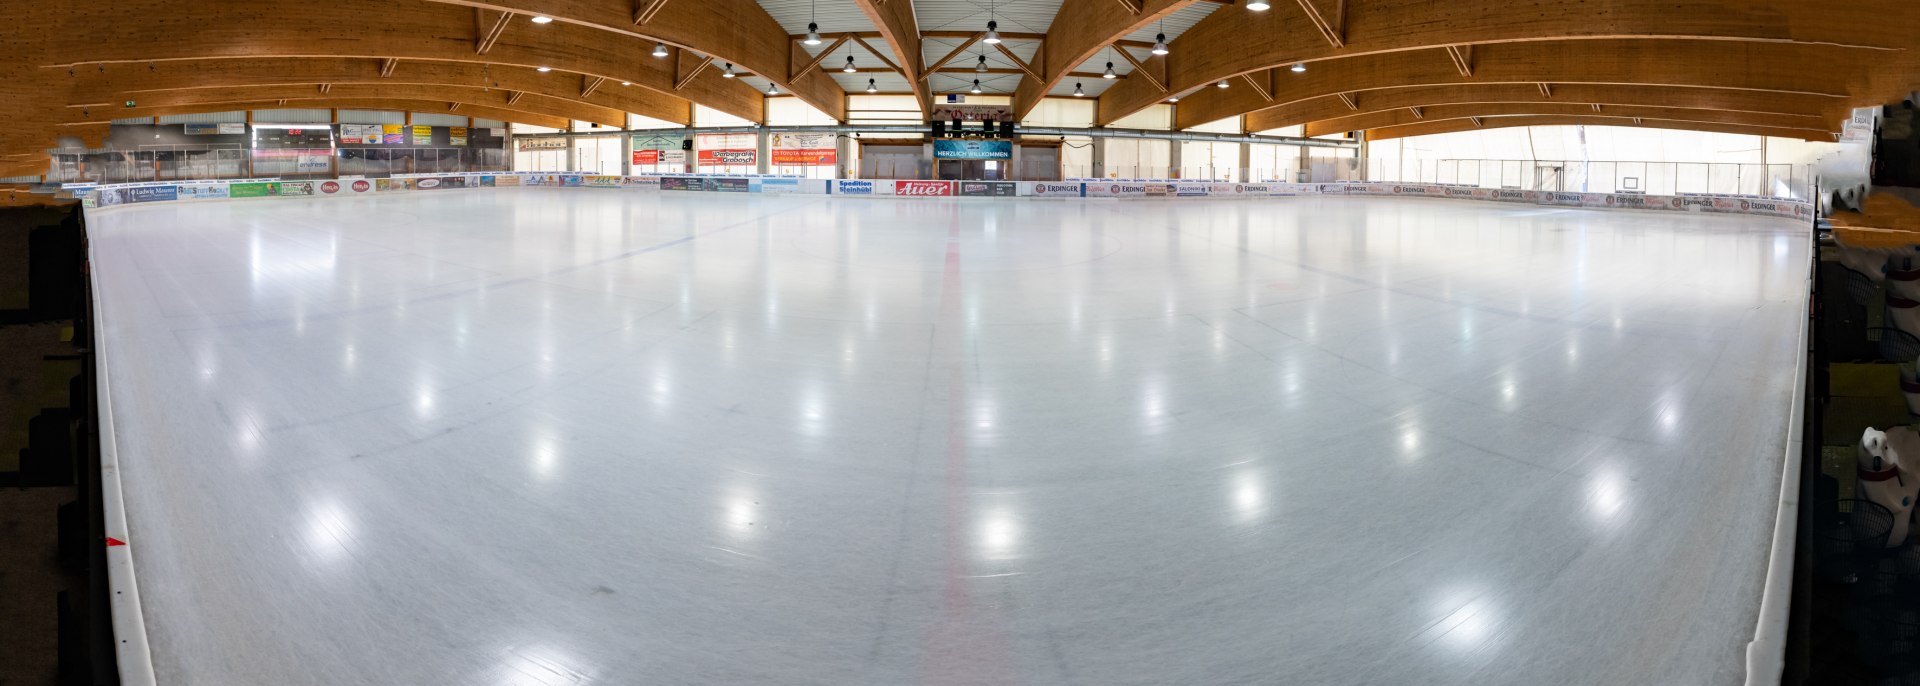 Die große Kusteisfläche im Eisstadion Mittenwald, © Arena Mittenwald GmbH